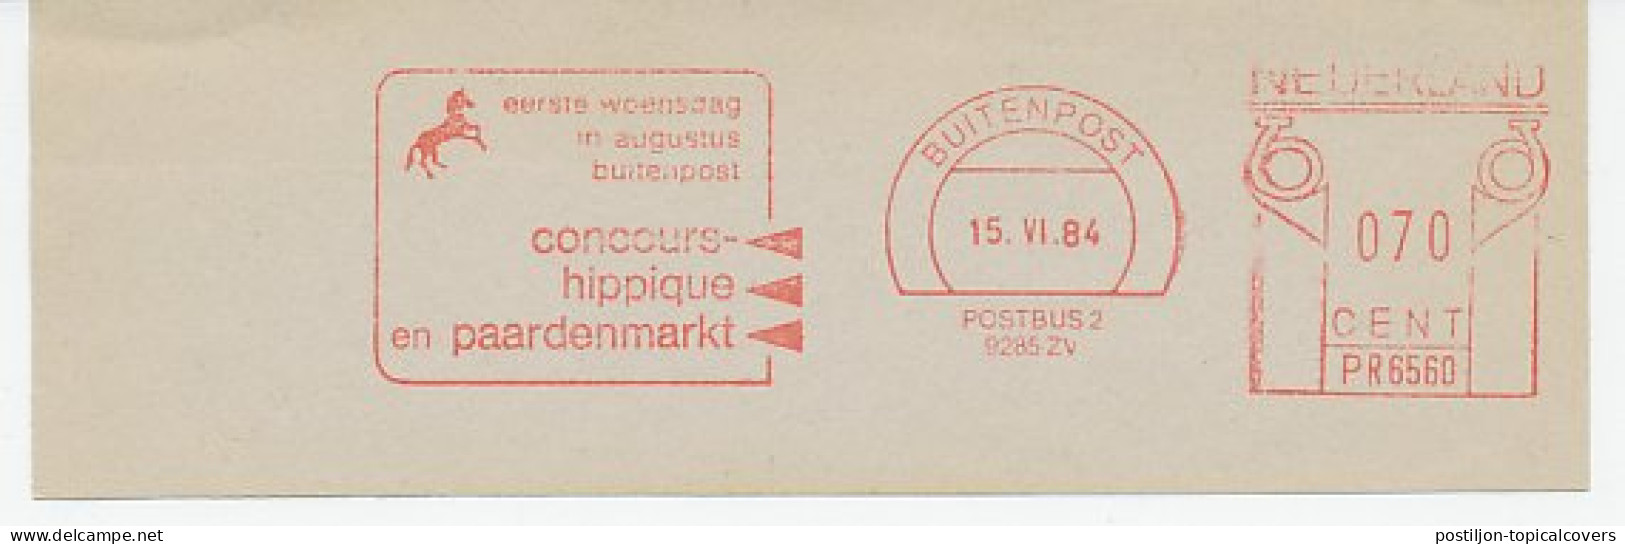 Meter Cut Netherlands 1984 Horse Contest - Horse Market - Concours Hippique - Horses